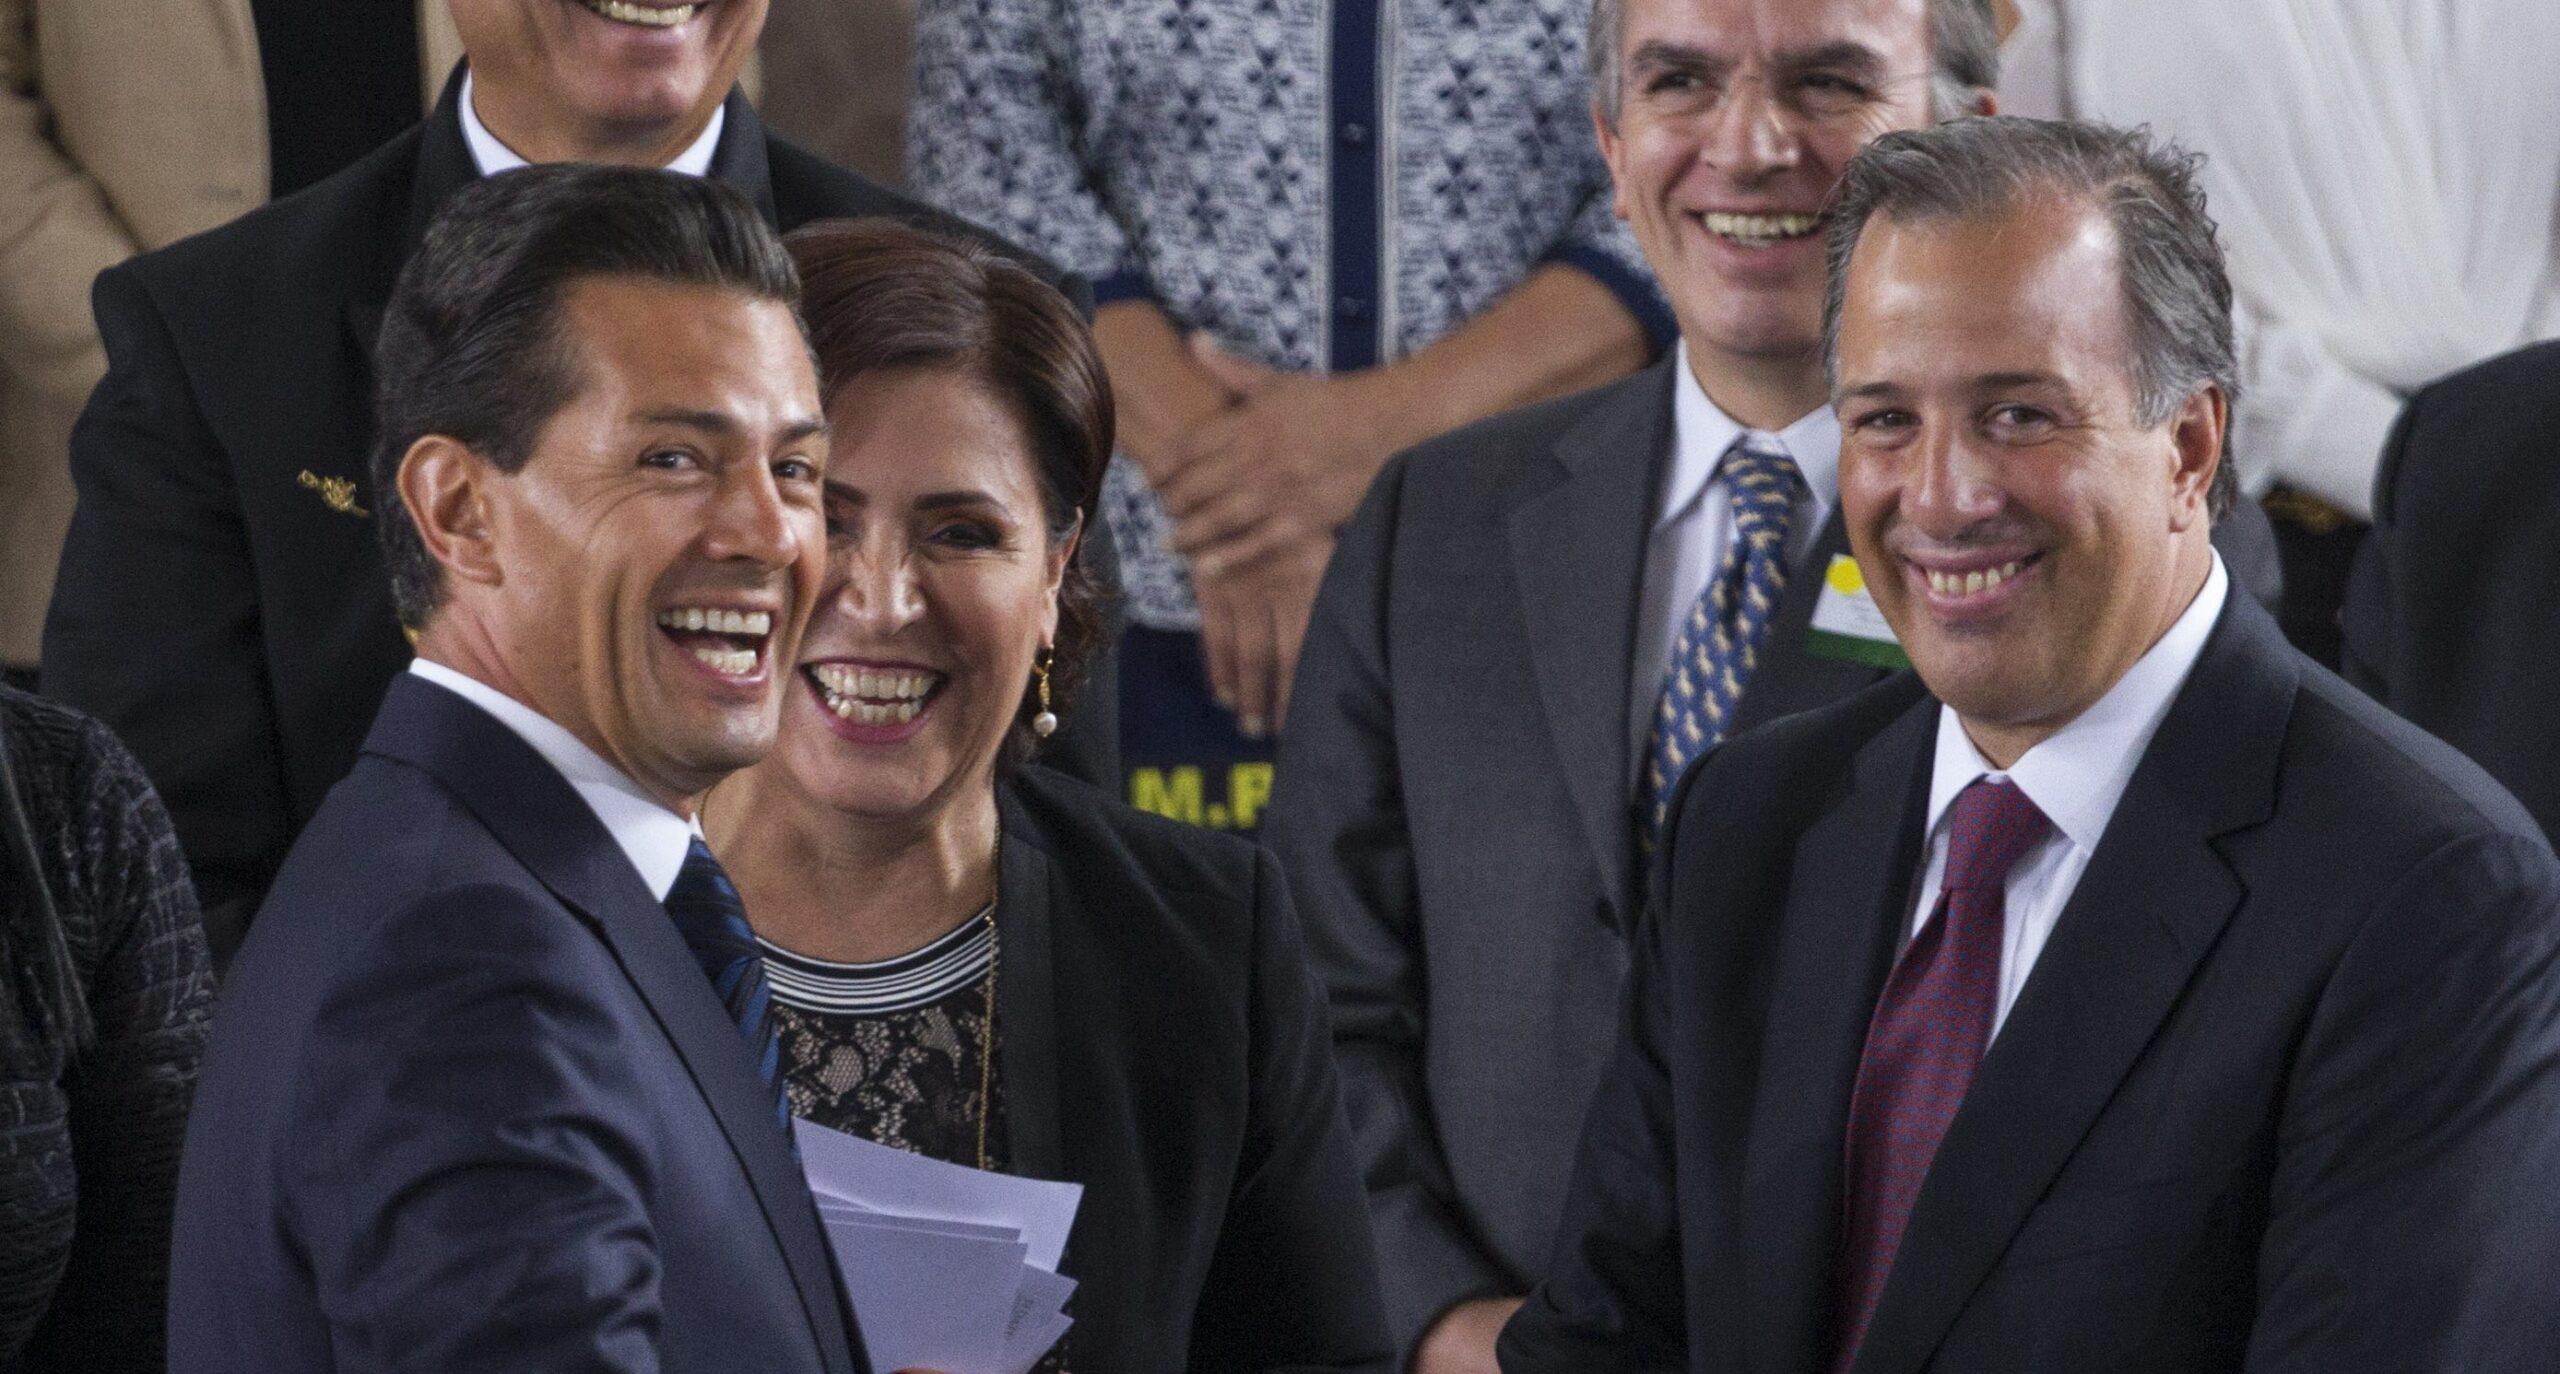 El presidente, los legisladores y los partidos, los que generan más desconfianza en mexicanos